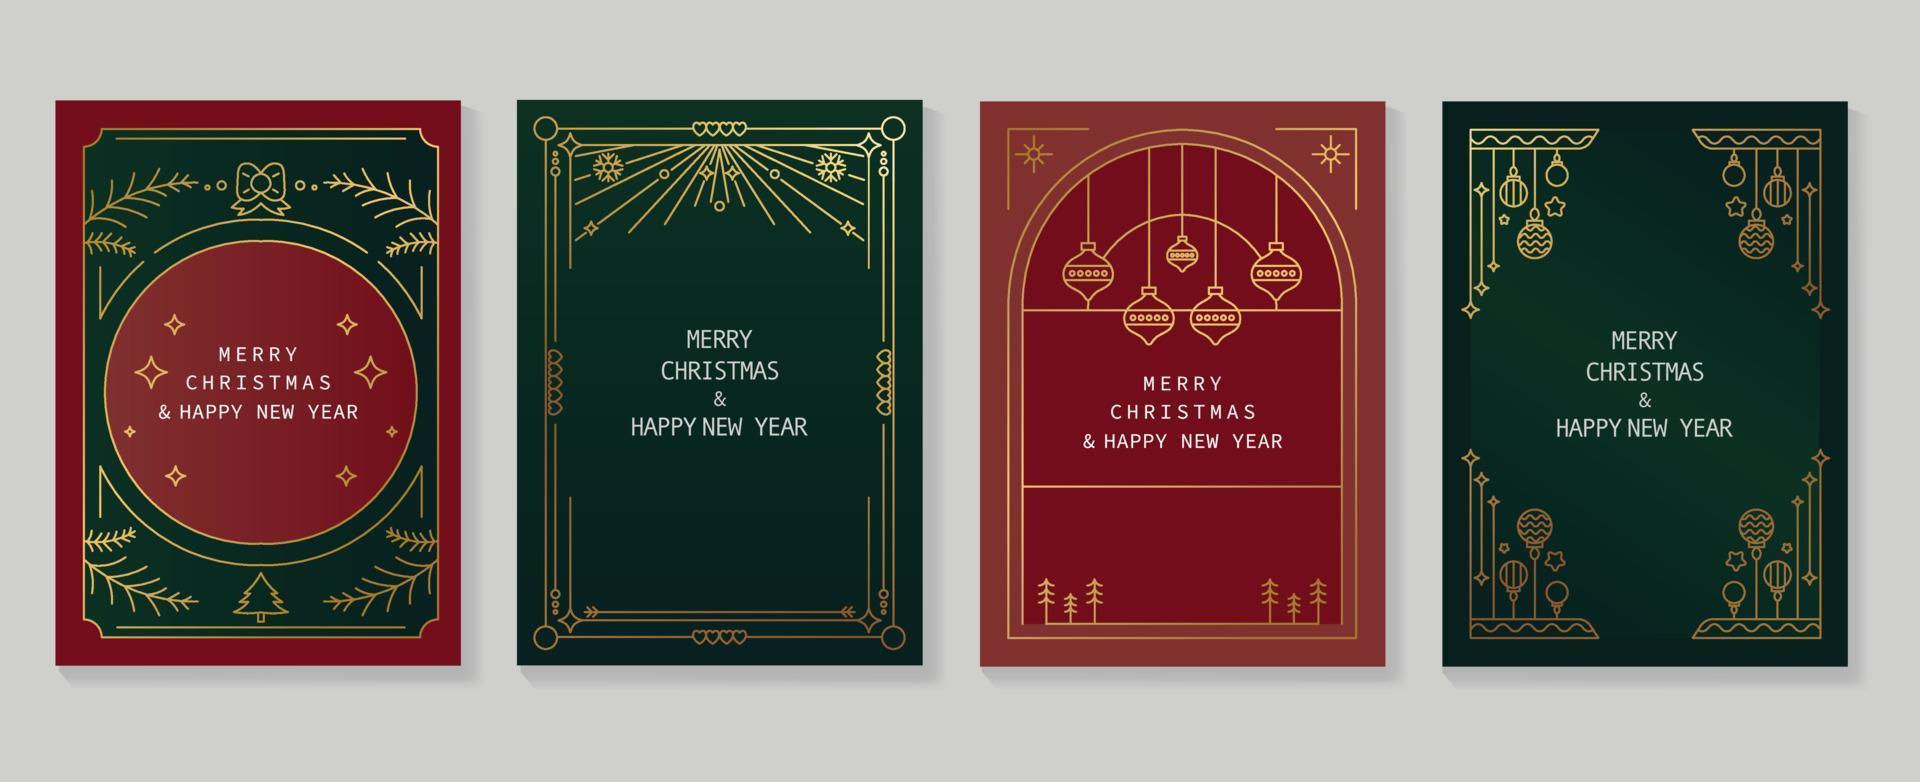 conjunto de vectores de diseño art deco de tarjetas de navidad y año nuevo de lujo. elemento navideño arte de línea dorada de hoja de pino, brillo, marco art deco, gatsby. diseño para portada, tarjeta de felicitación, impresión, publicación, sitio web.